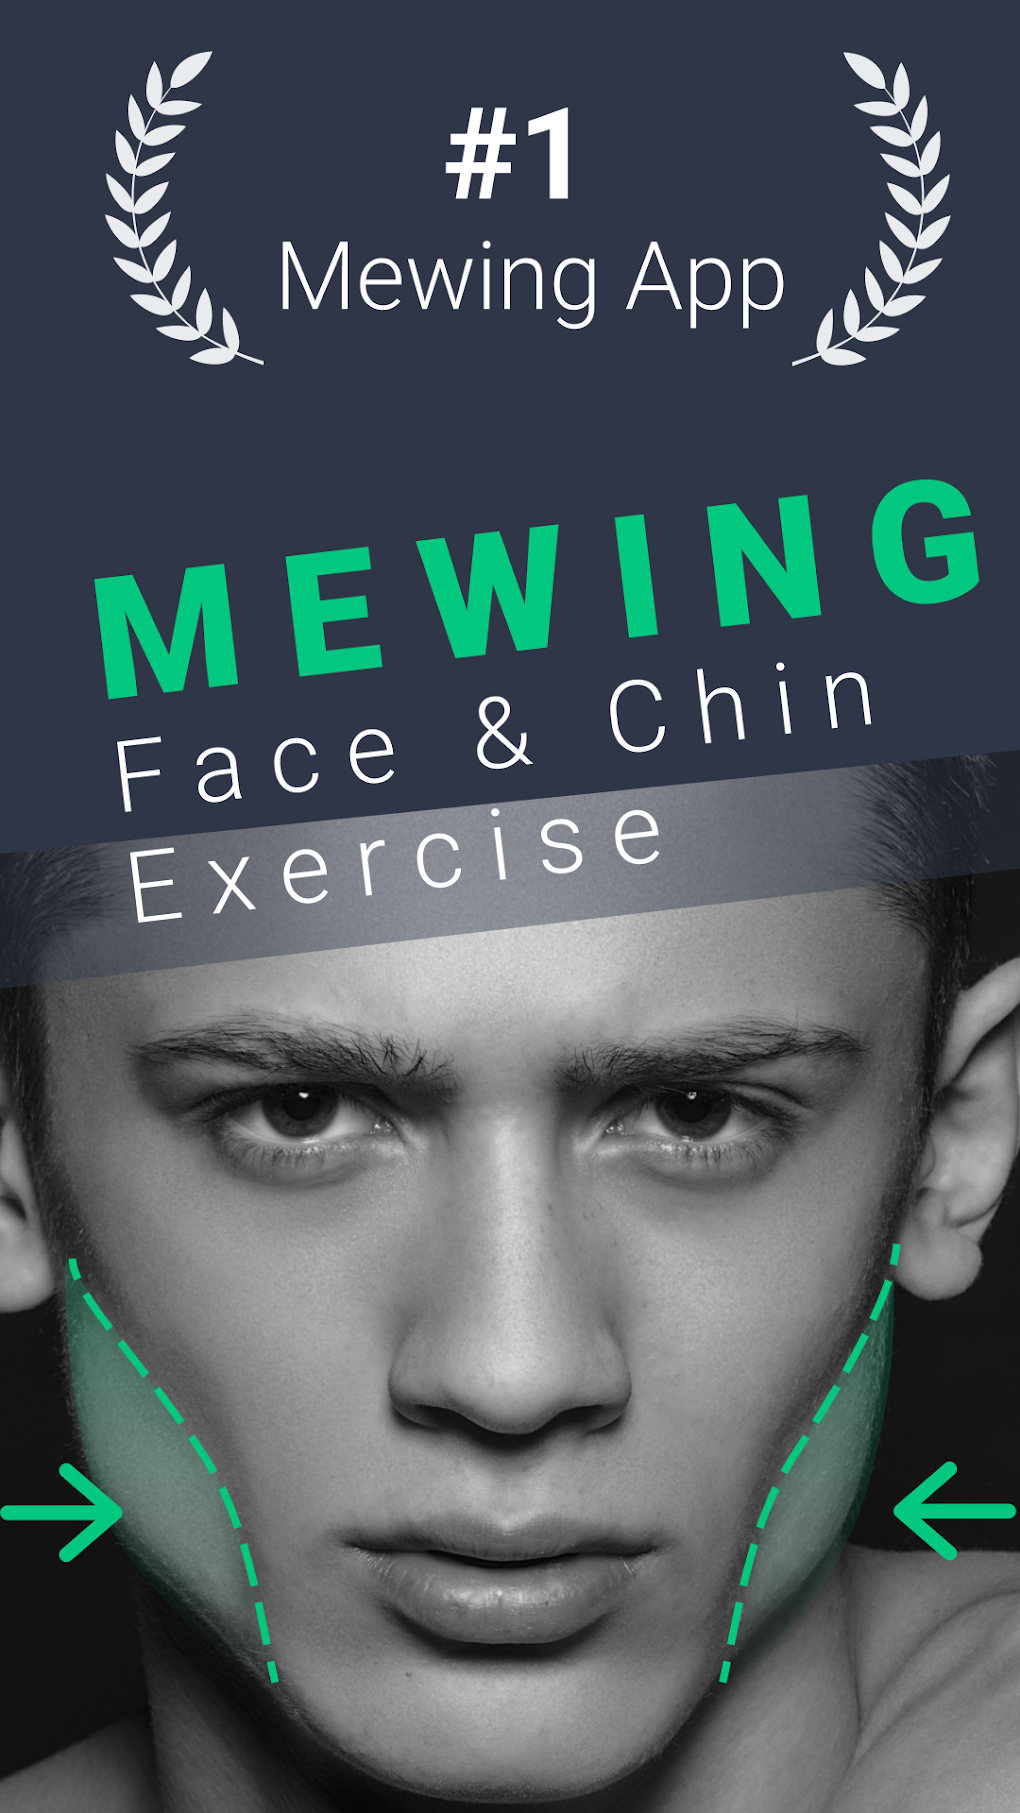 Conheça o mewing, exercício facial que promete reduzir a papada e